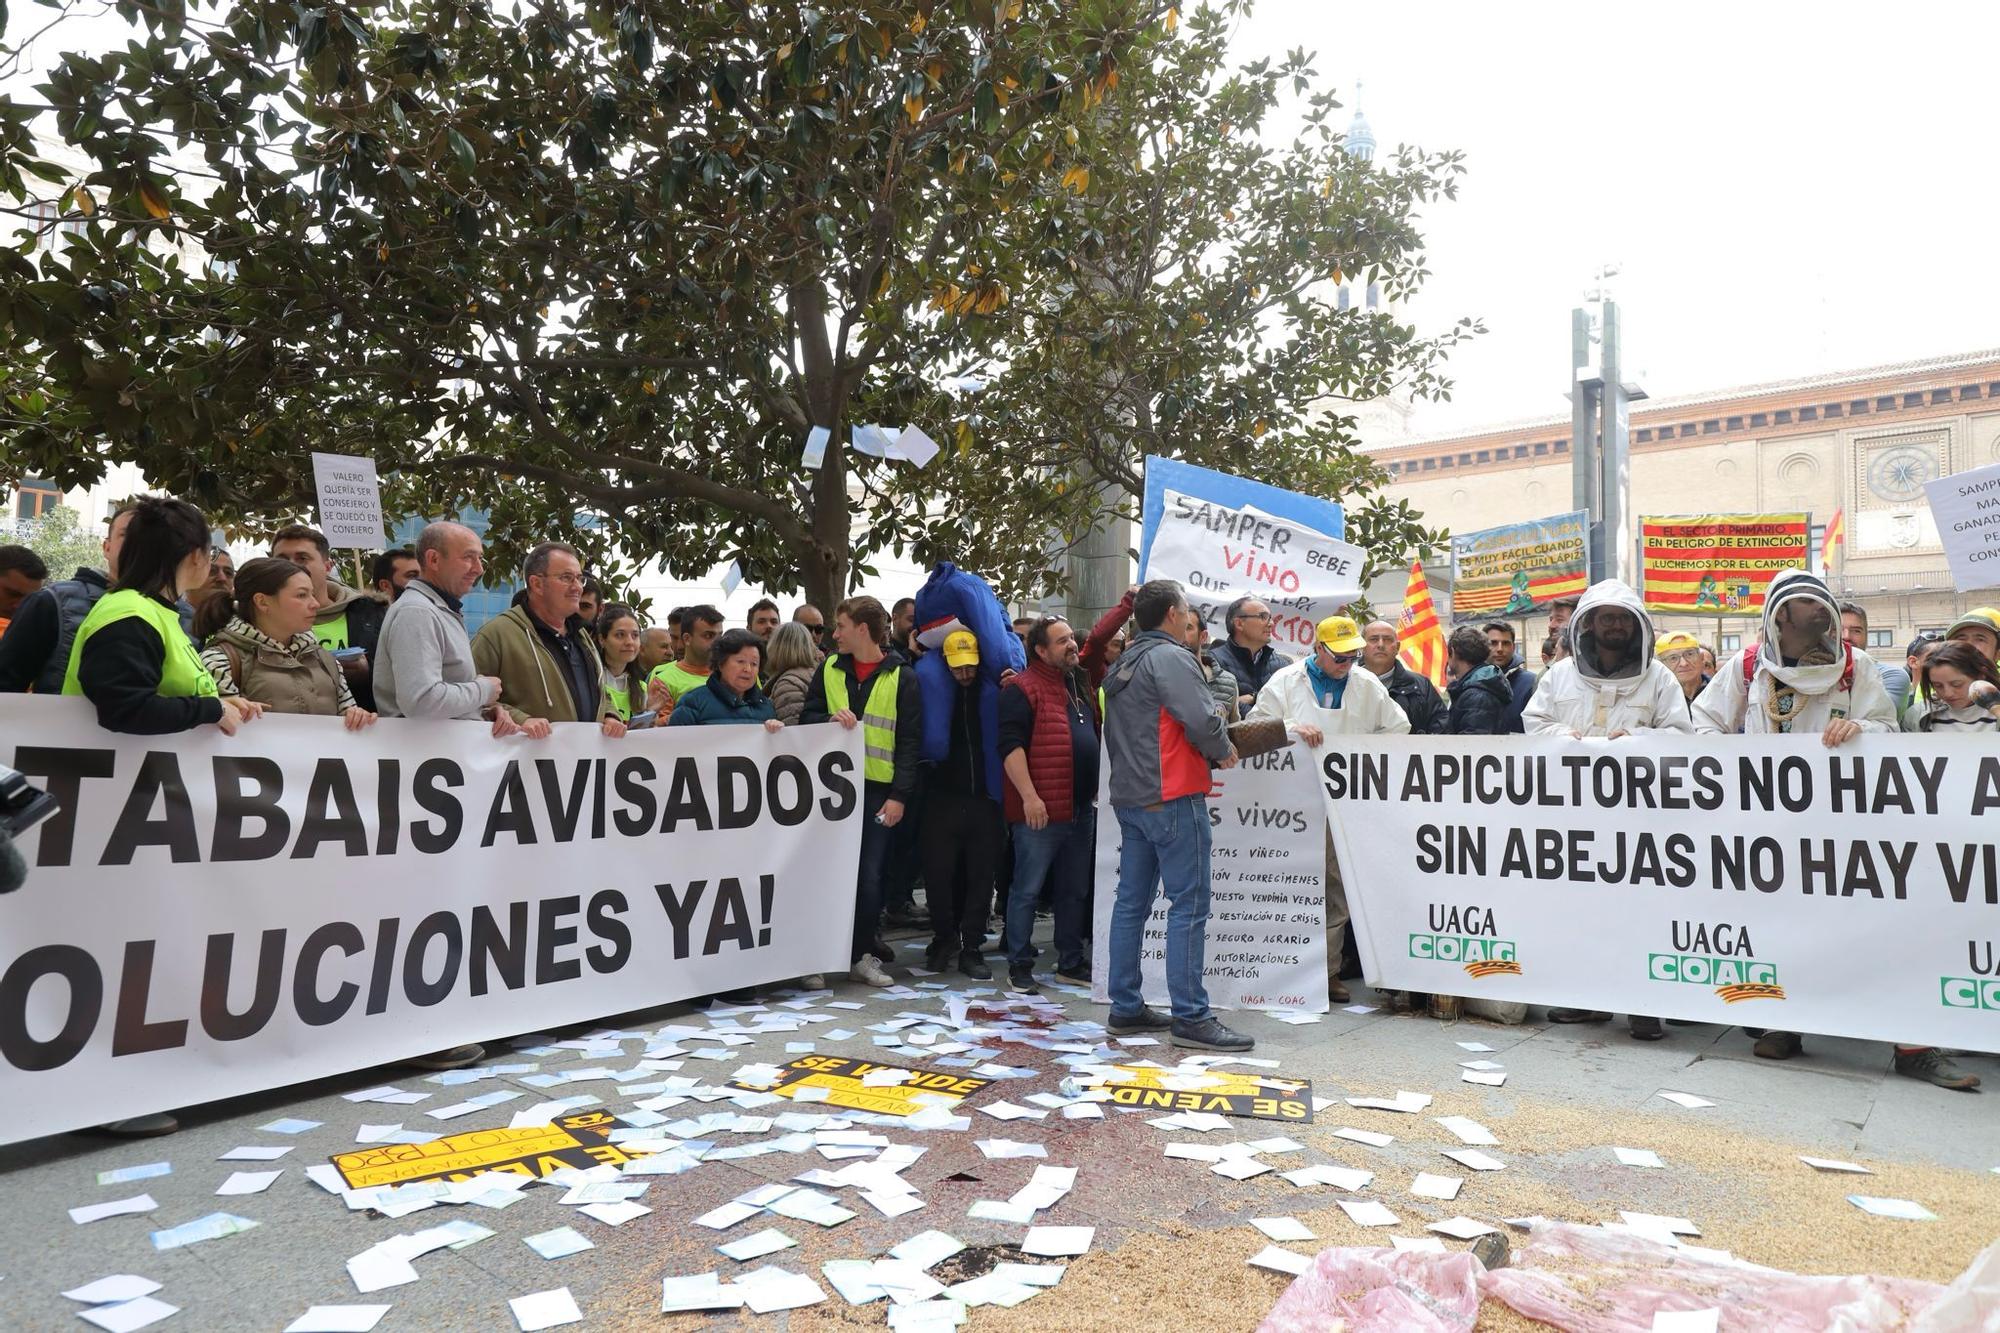 En imágenes | Tensión en la protesta de los agricultores en el centro de Zaragoza